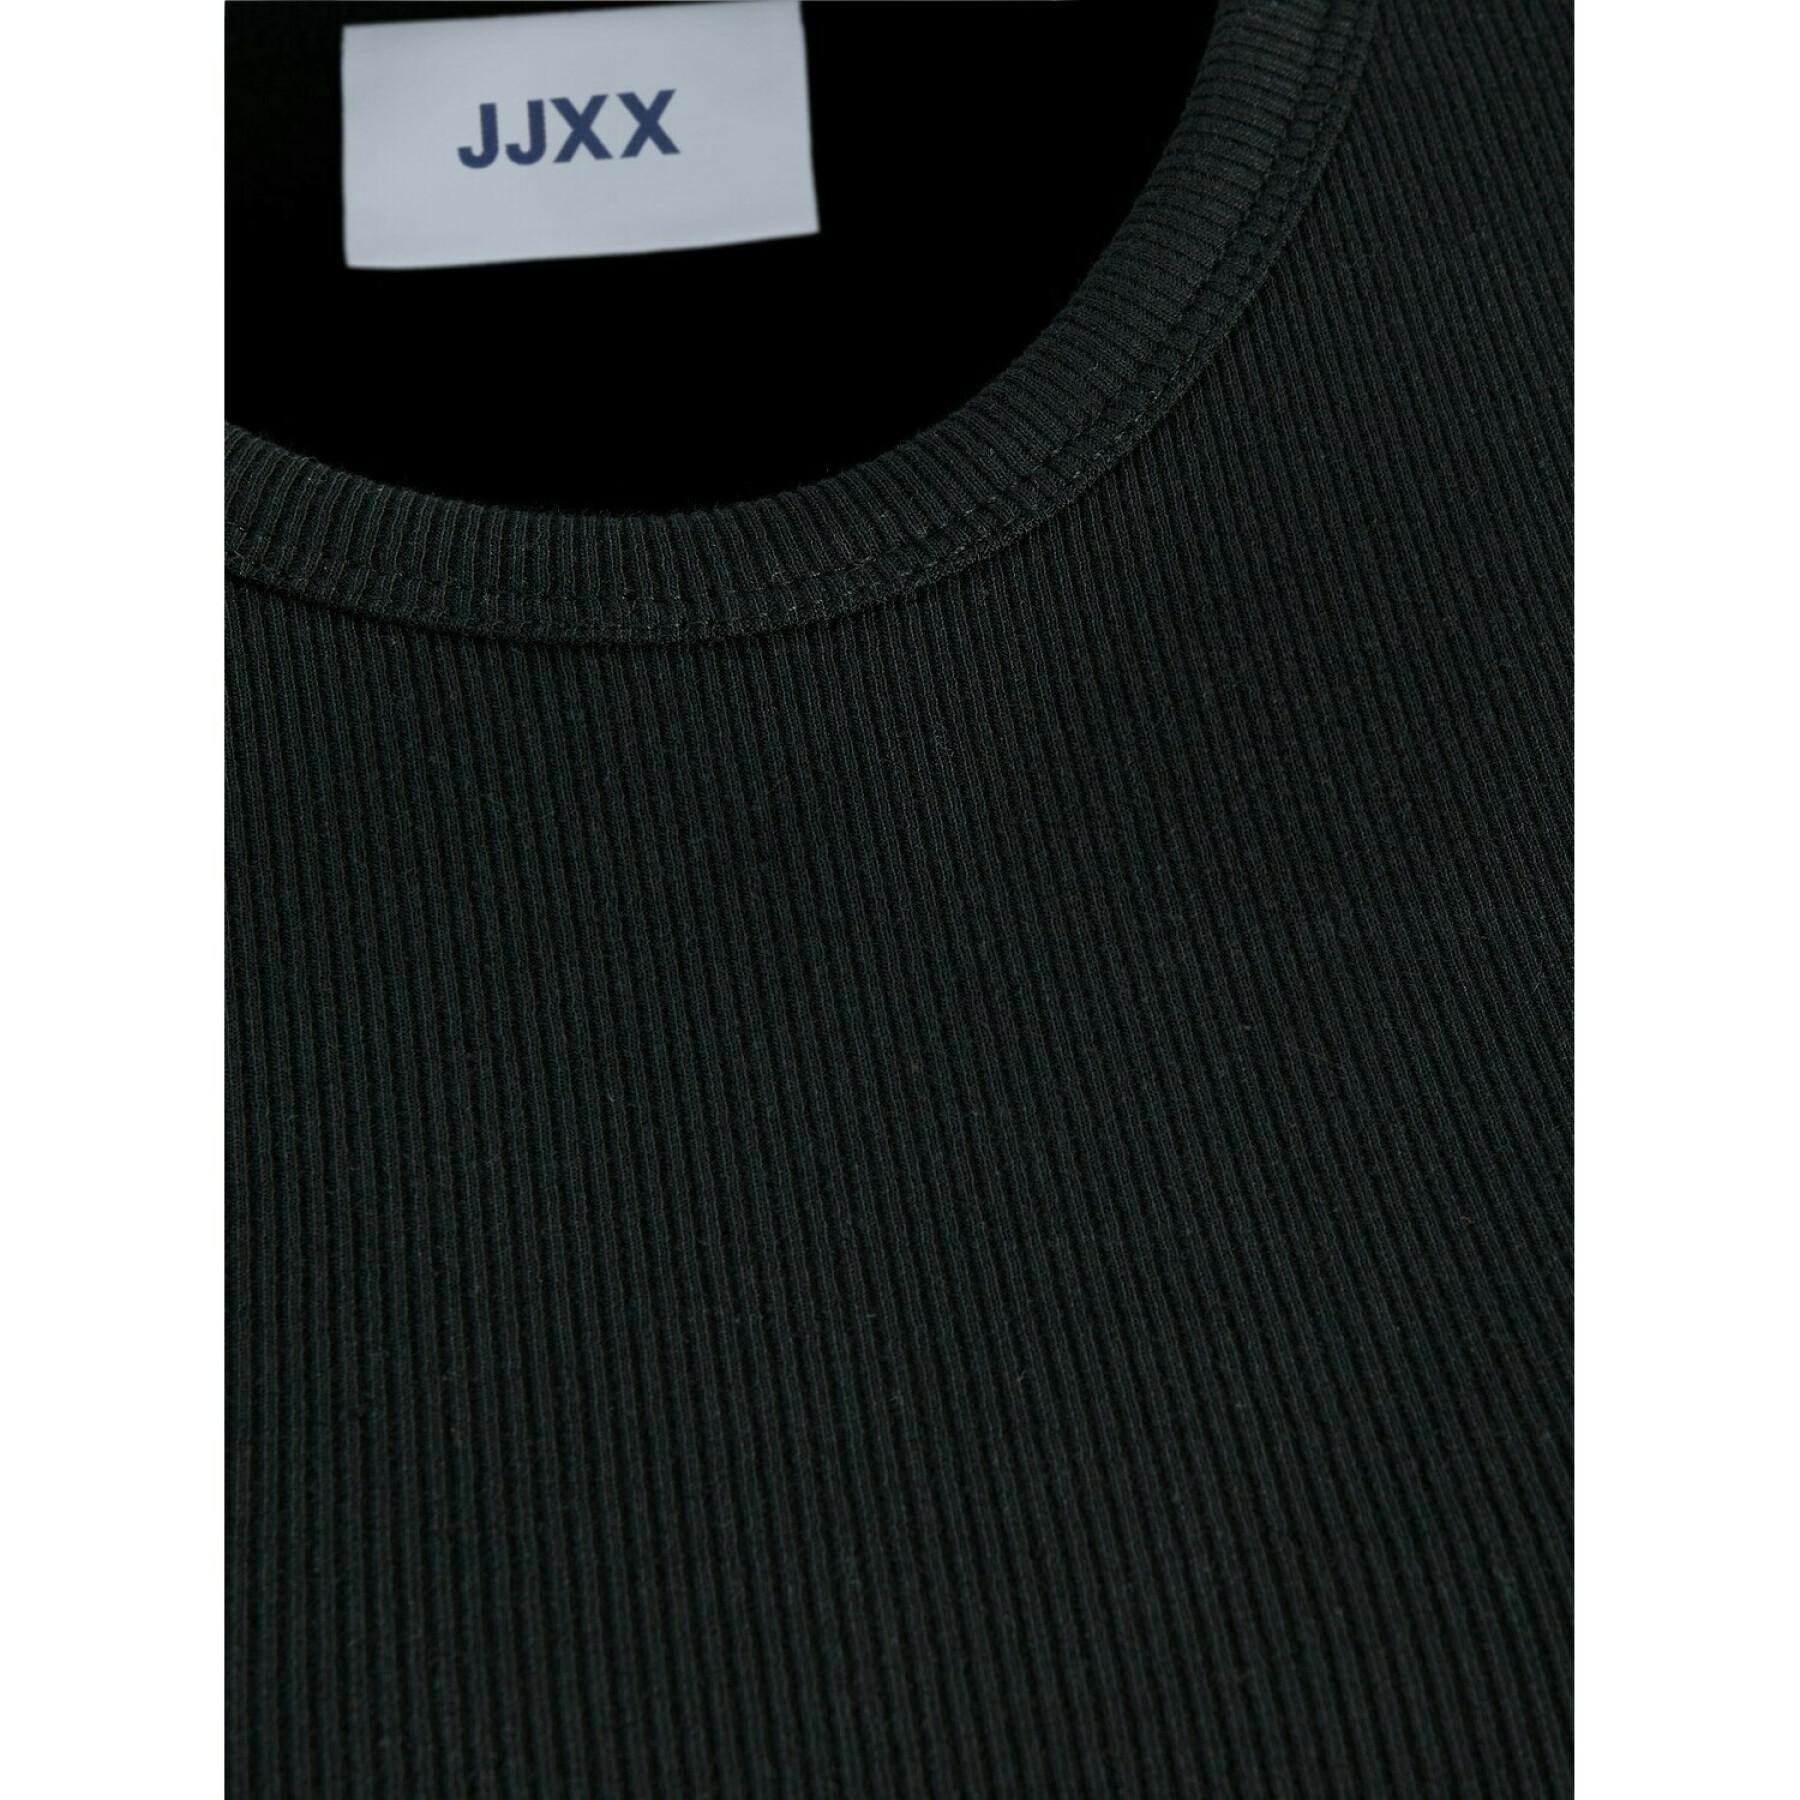 Women's T-shirt JJXX freya